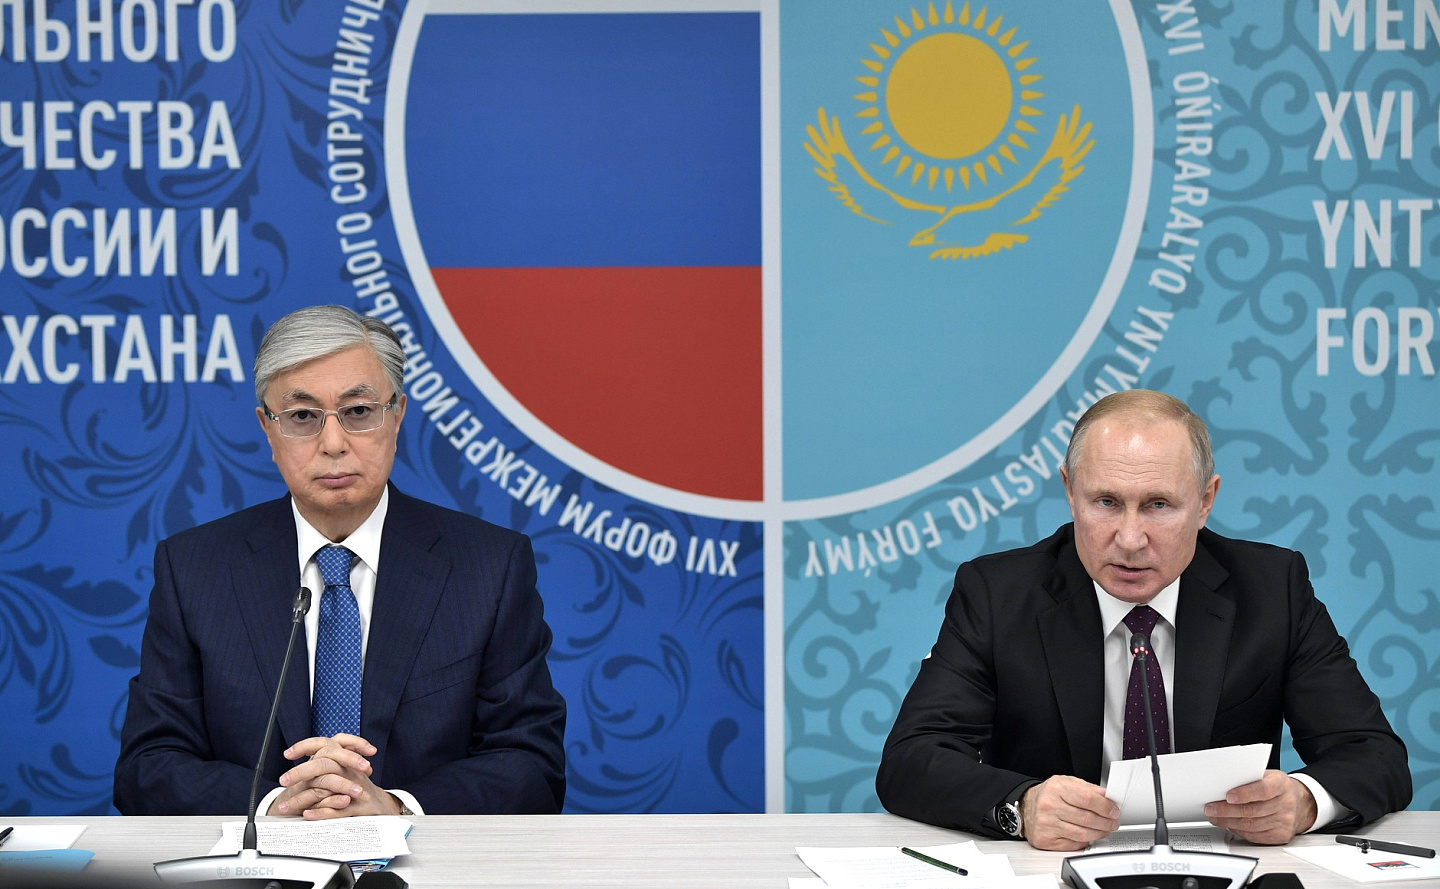 Владимир Путин и Касым-Жомарт Токаев приняли участие в пленарном заседании XVI Форума межрегионального сотрудничества России и Казахстана